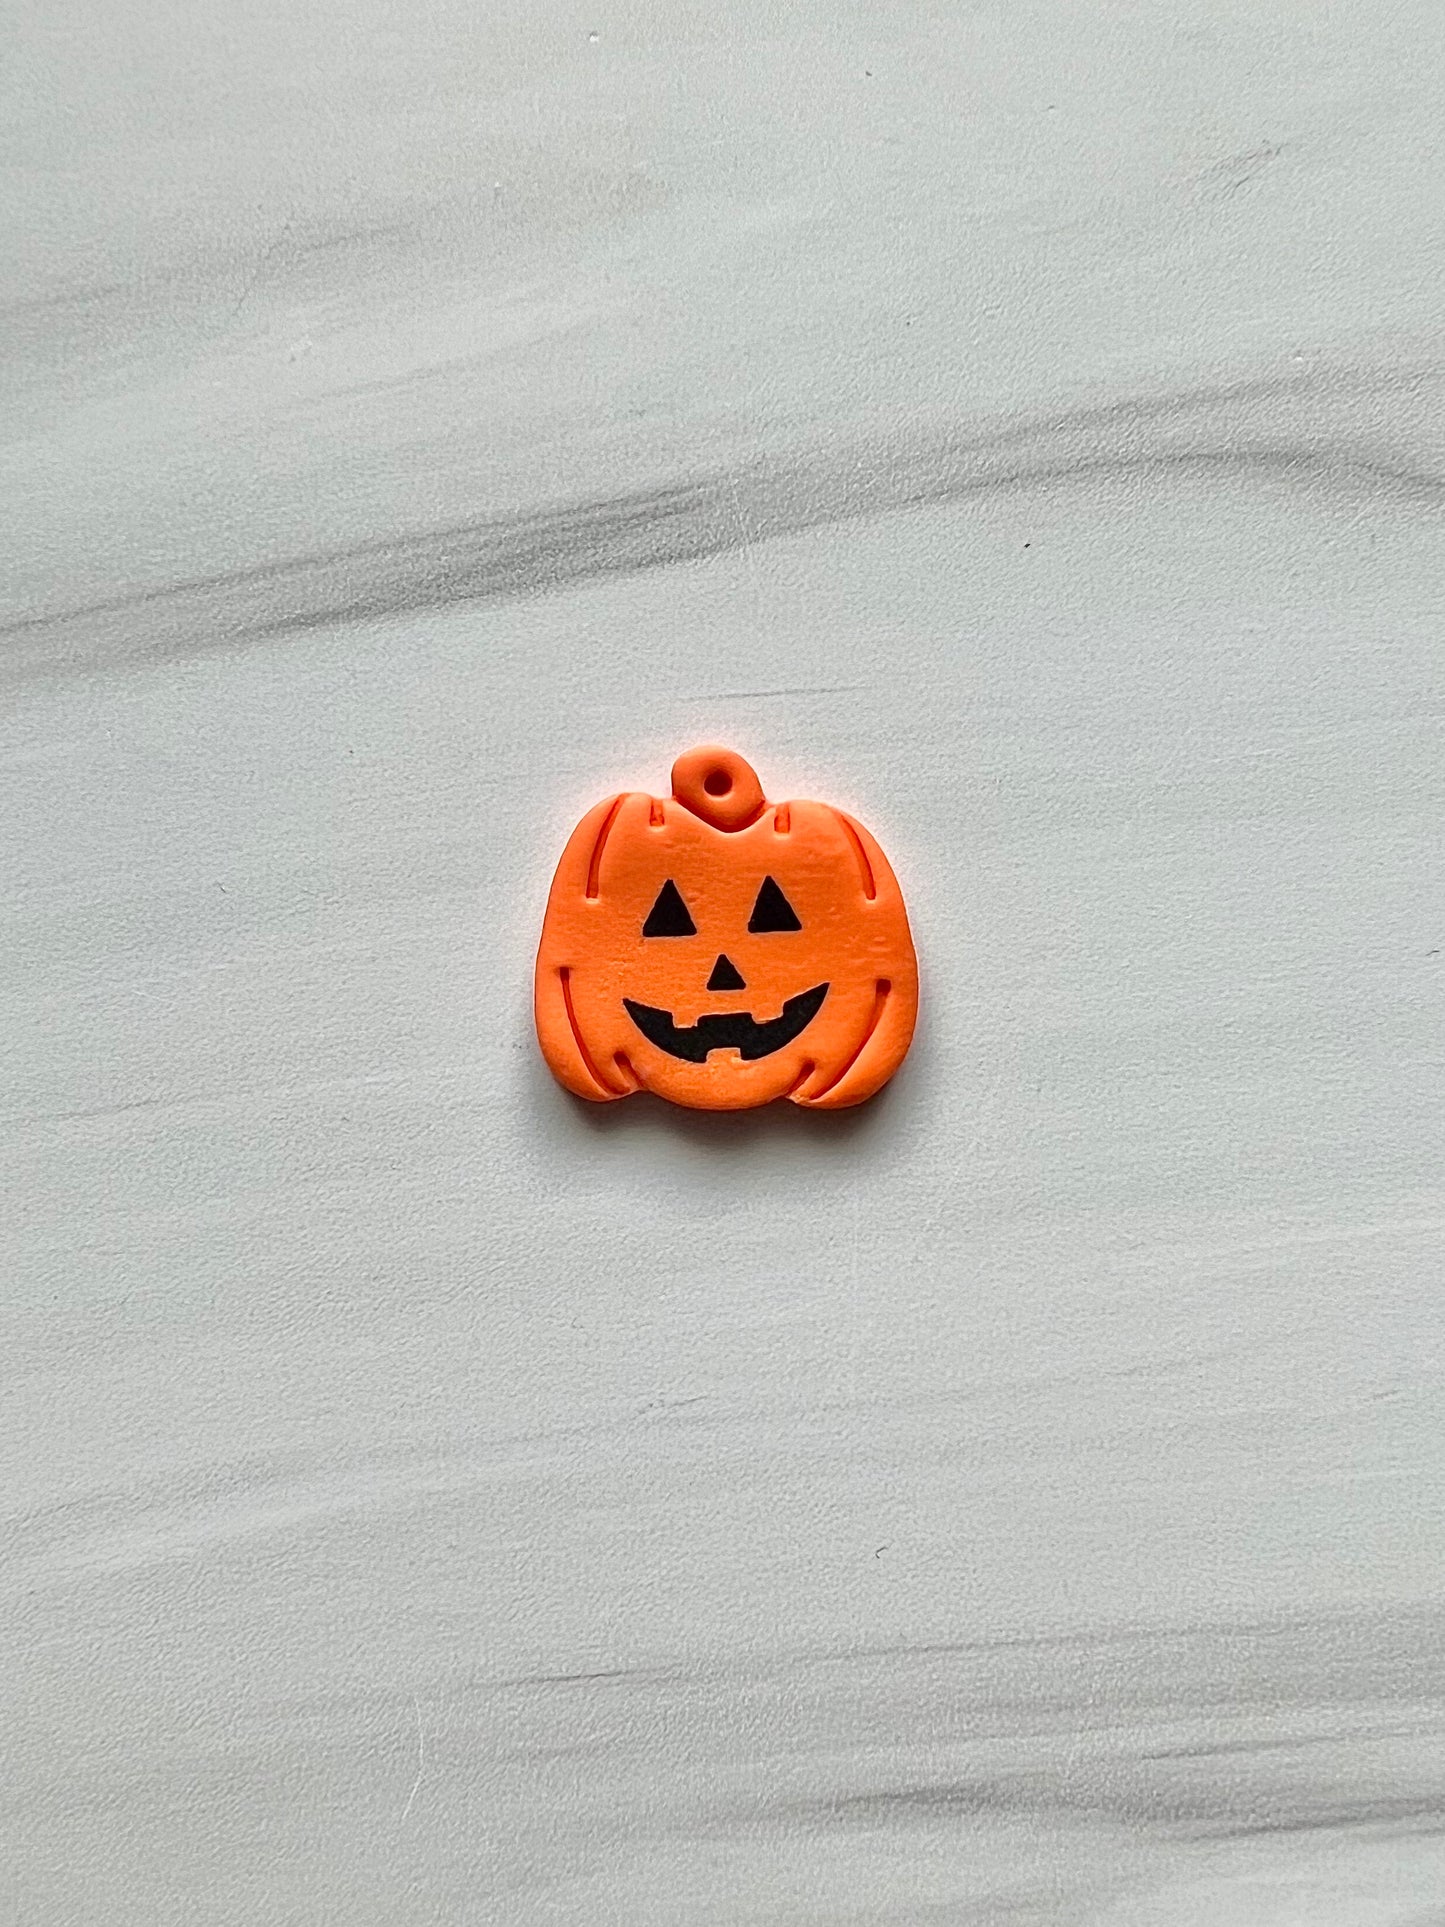 Jack O’ Lantern Pumpkin Cutter and Face Silkscreen Set